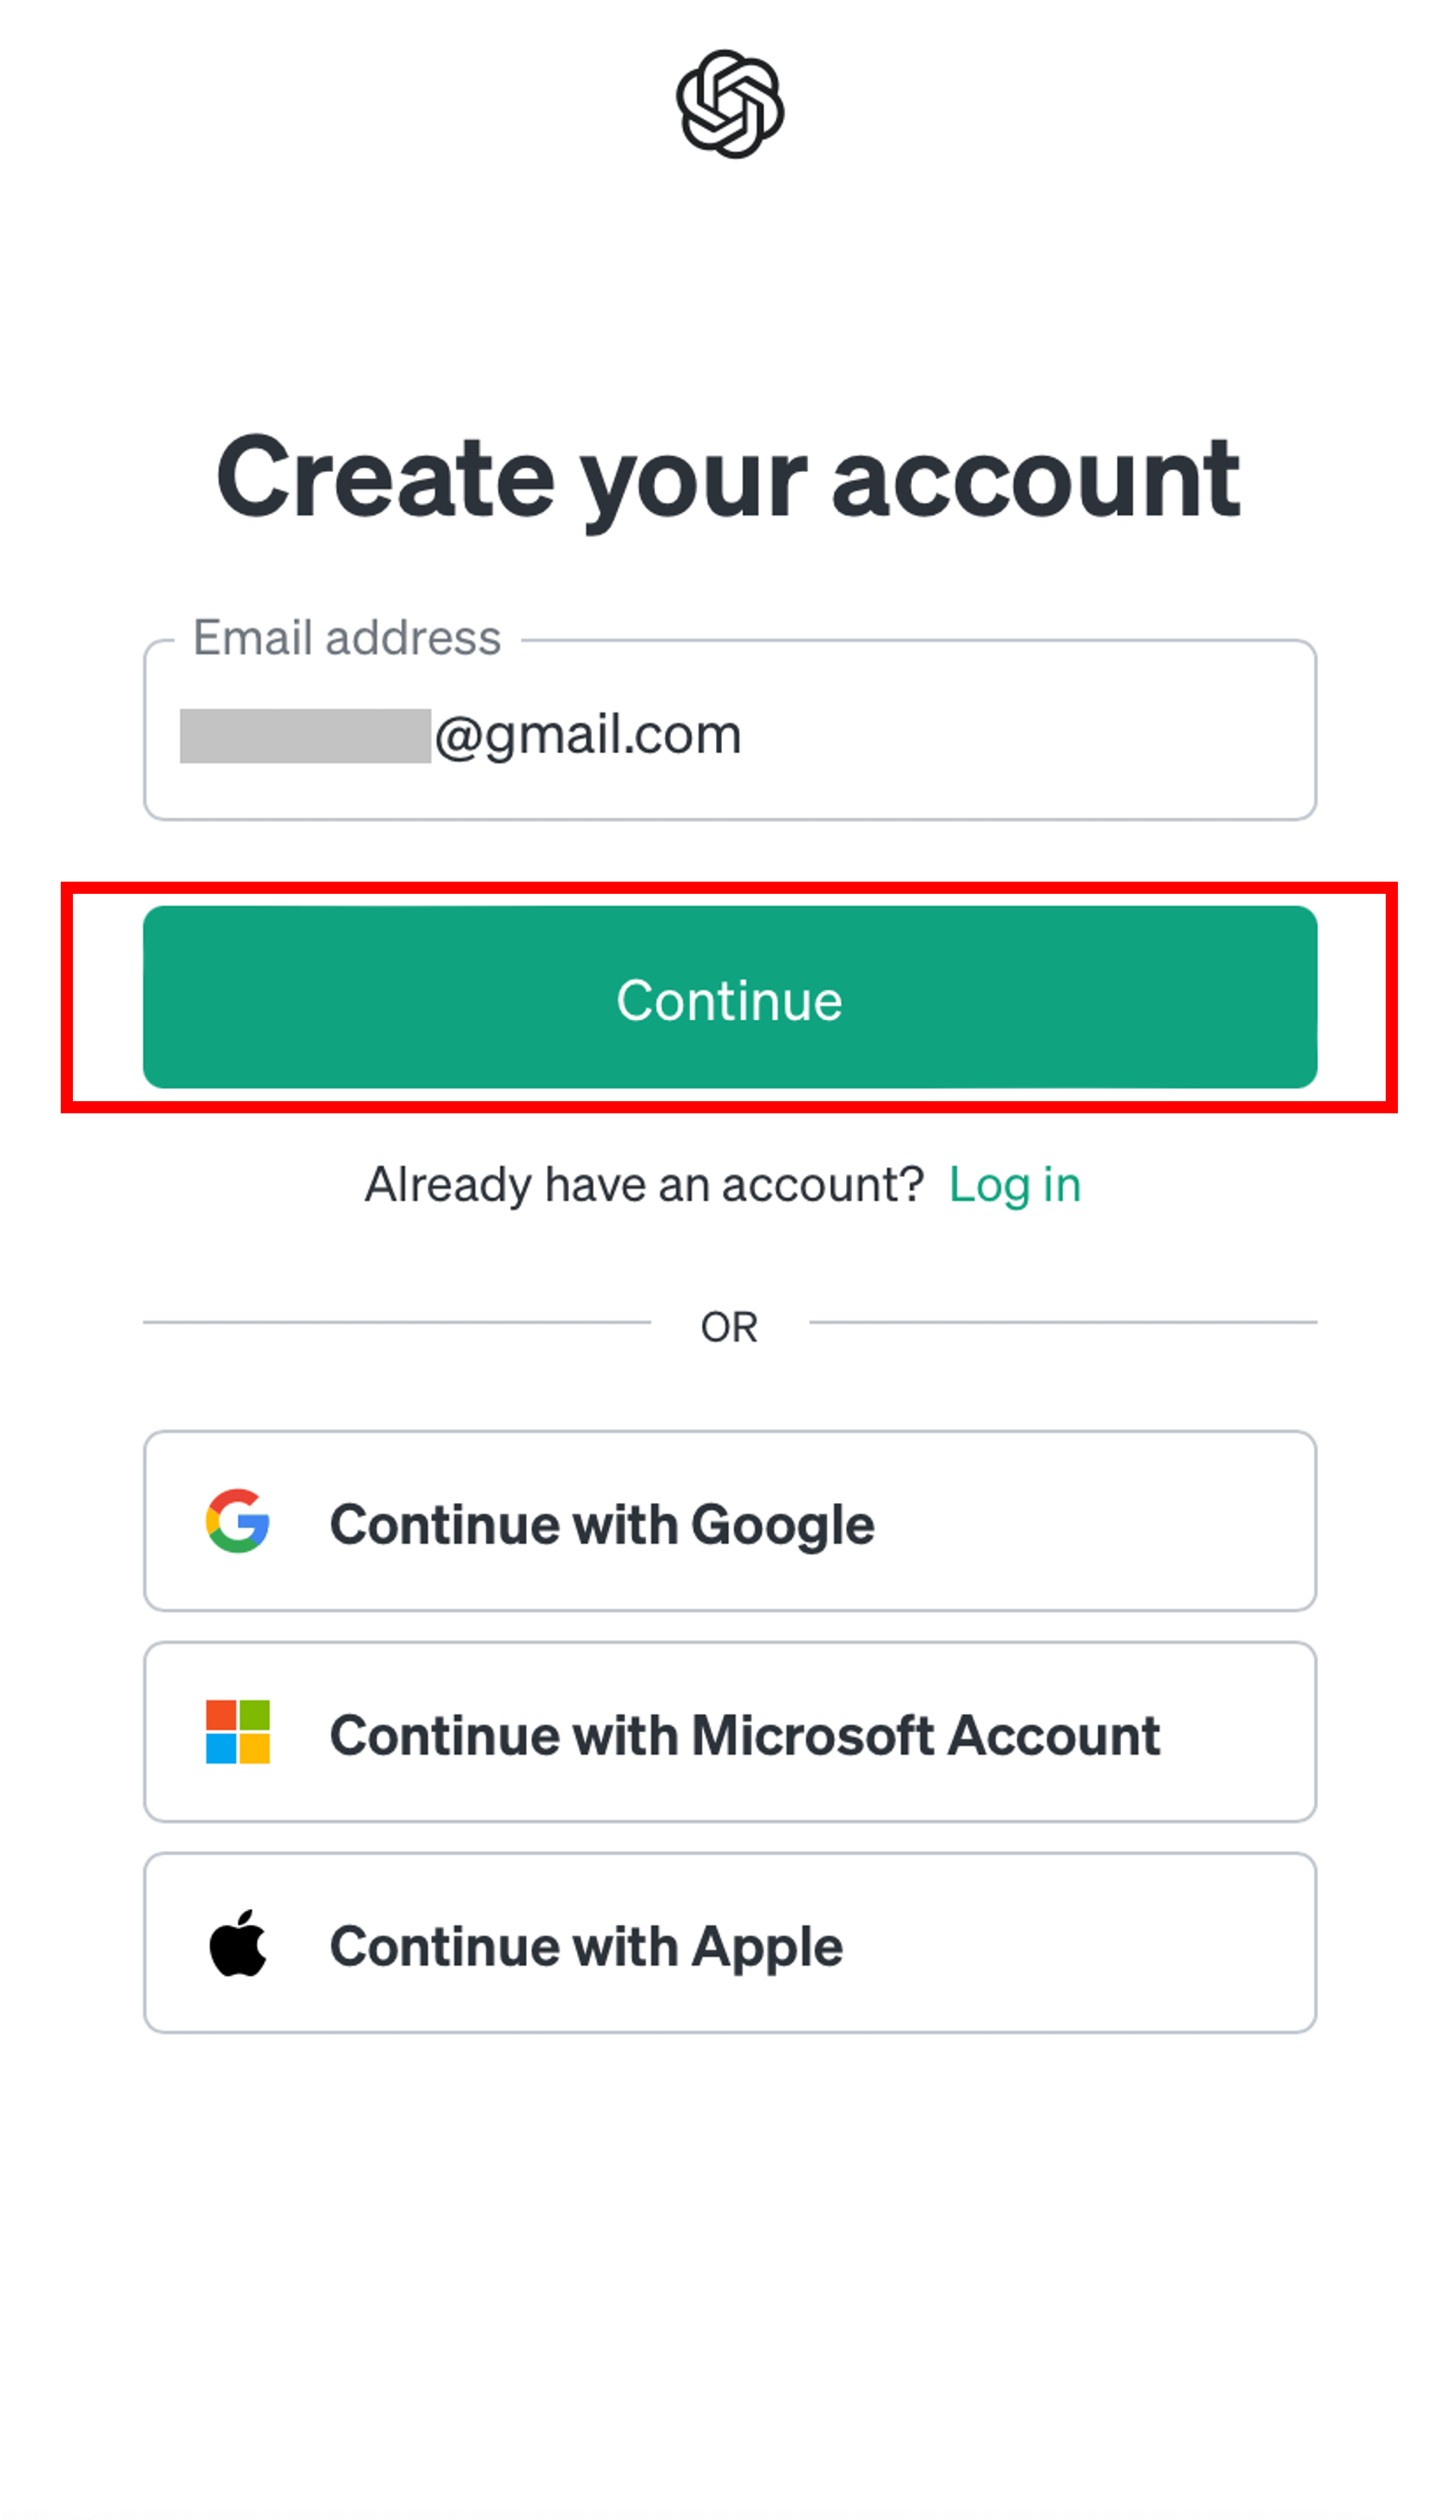 メールアドレス入力後に「Continue」ボタンをタップする場面のスクリーンショット